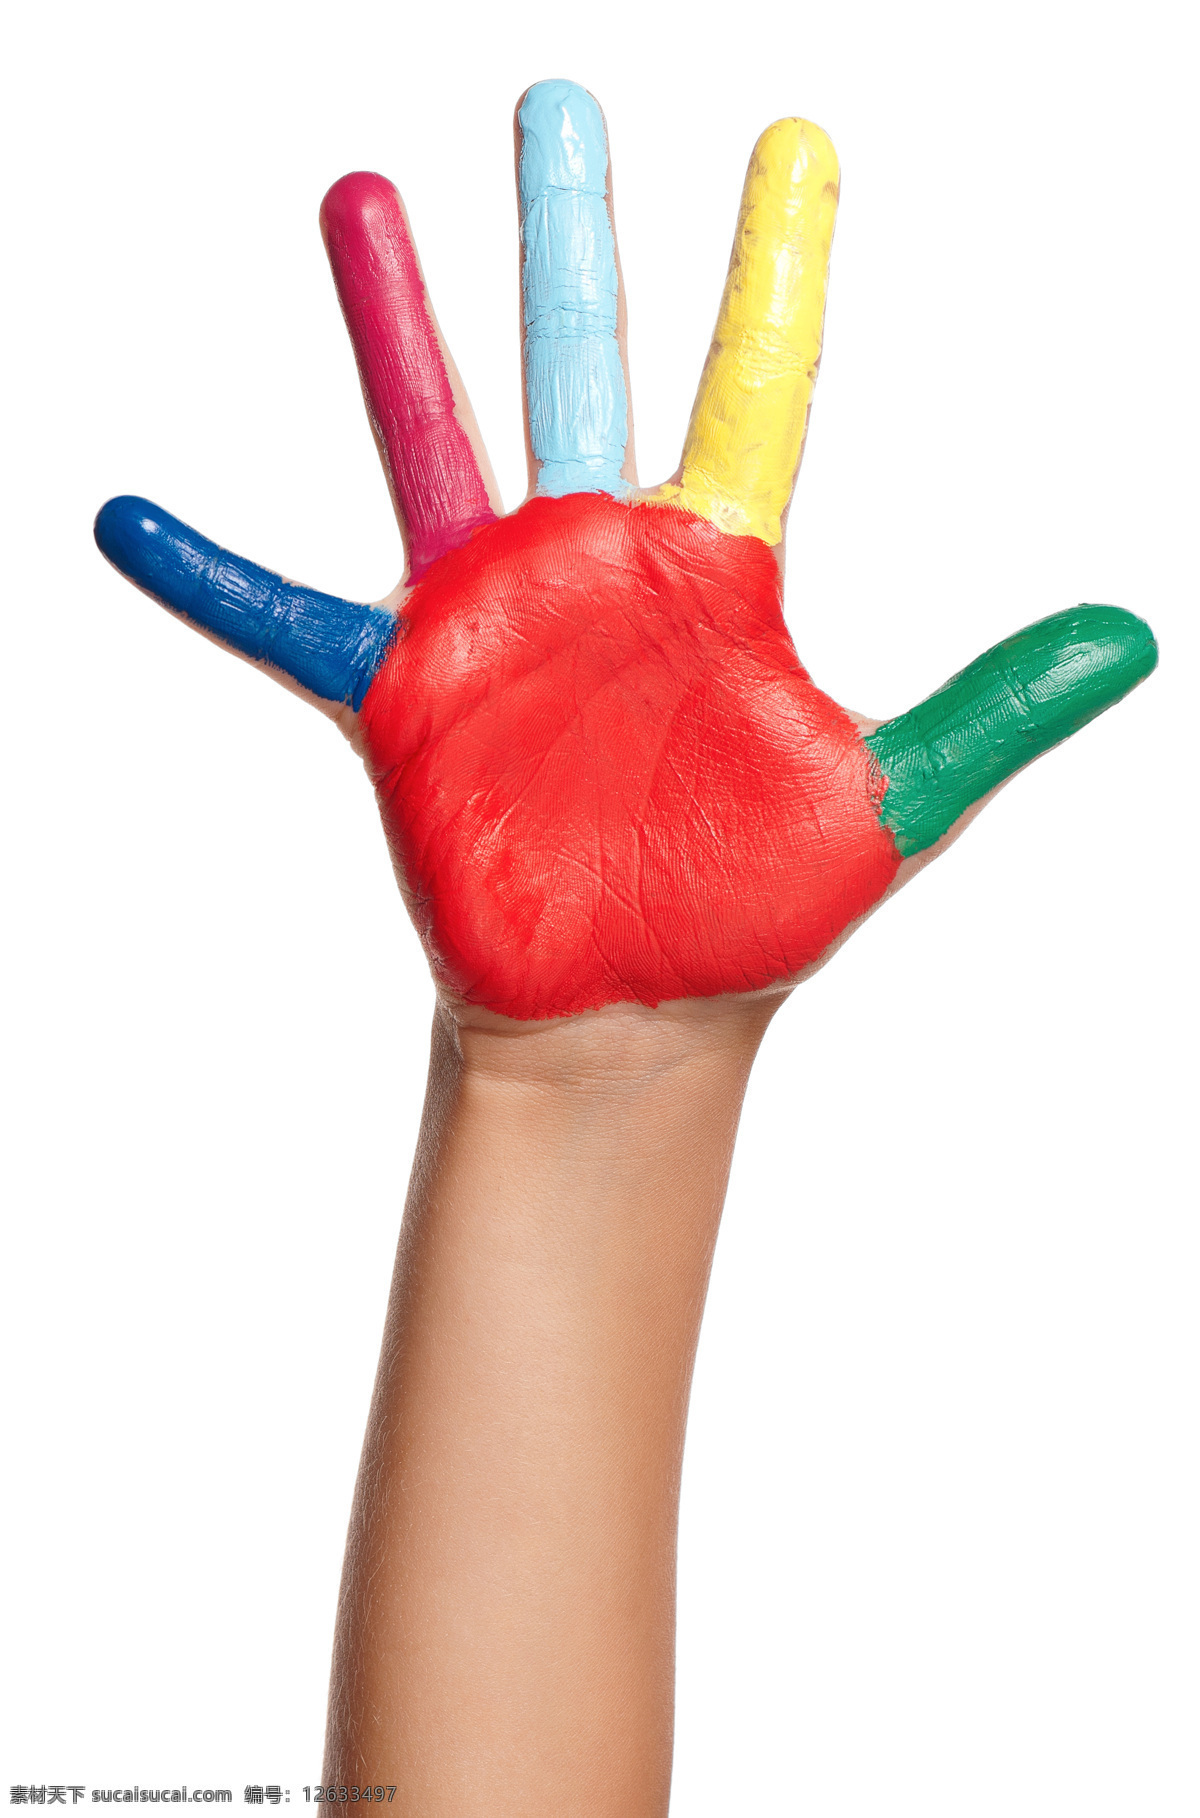 五颜六色 小手 颜料 彩色颜料 彩色手掌 美术 手 彩色儿童手 儿童手 人体器官图 人物图片